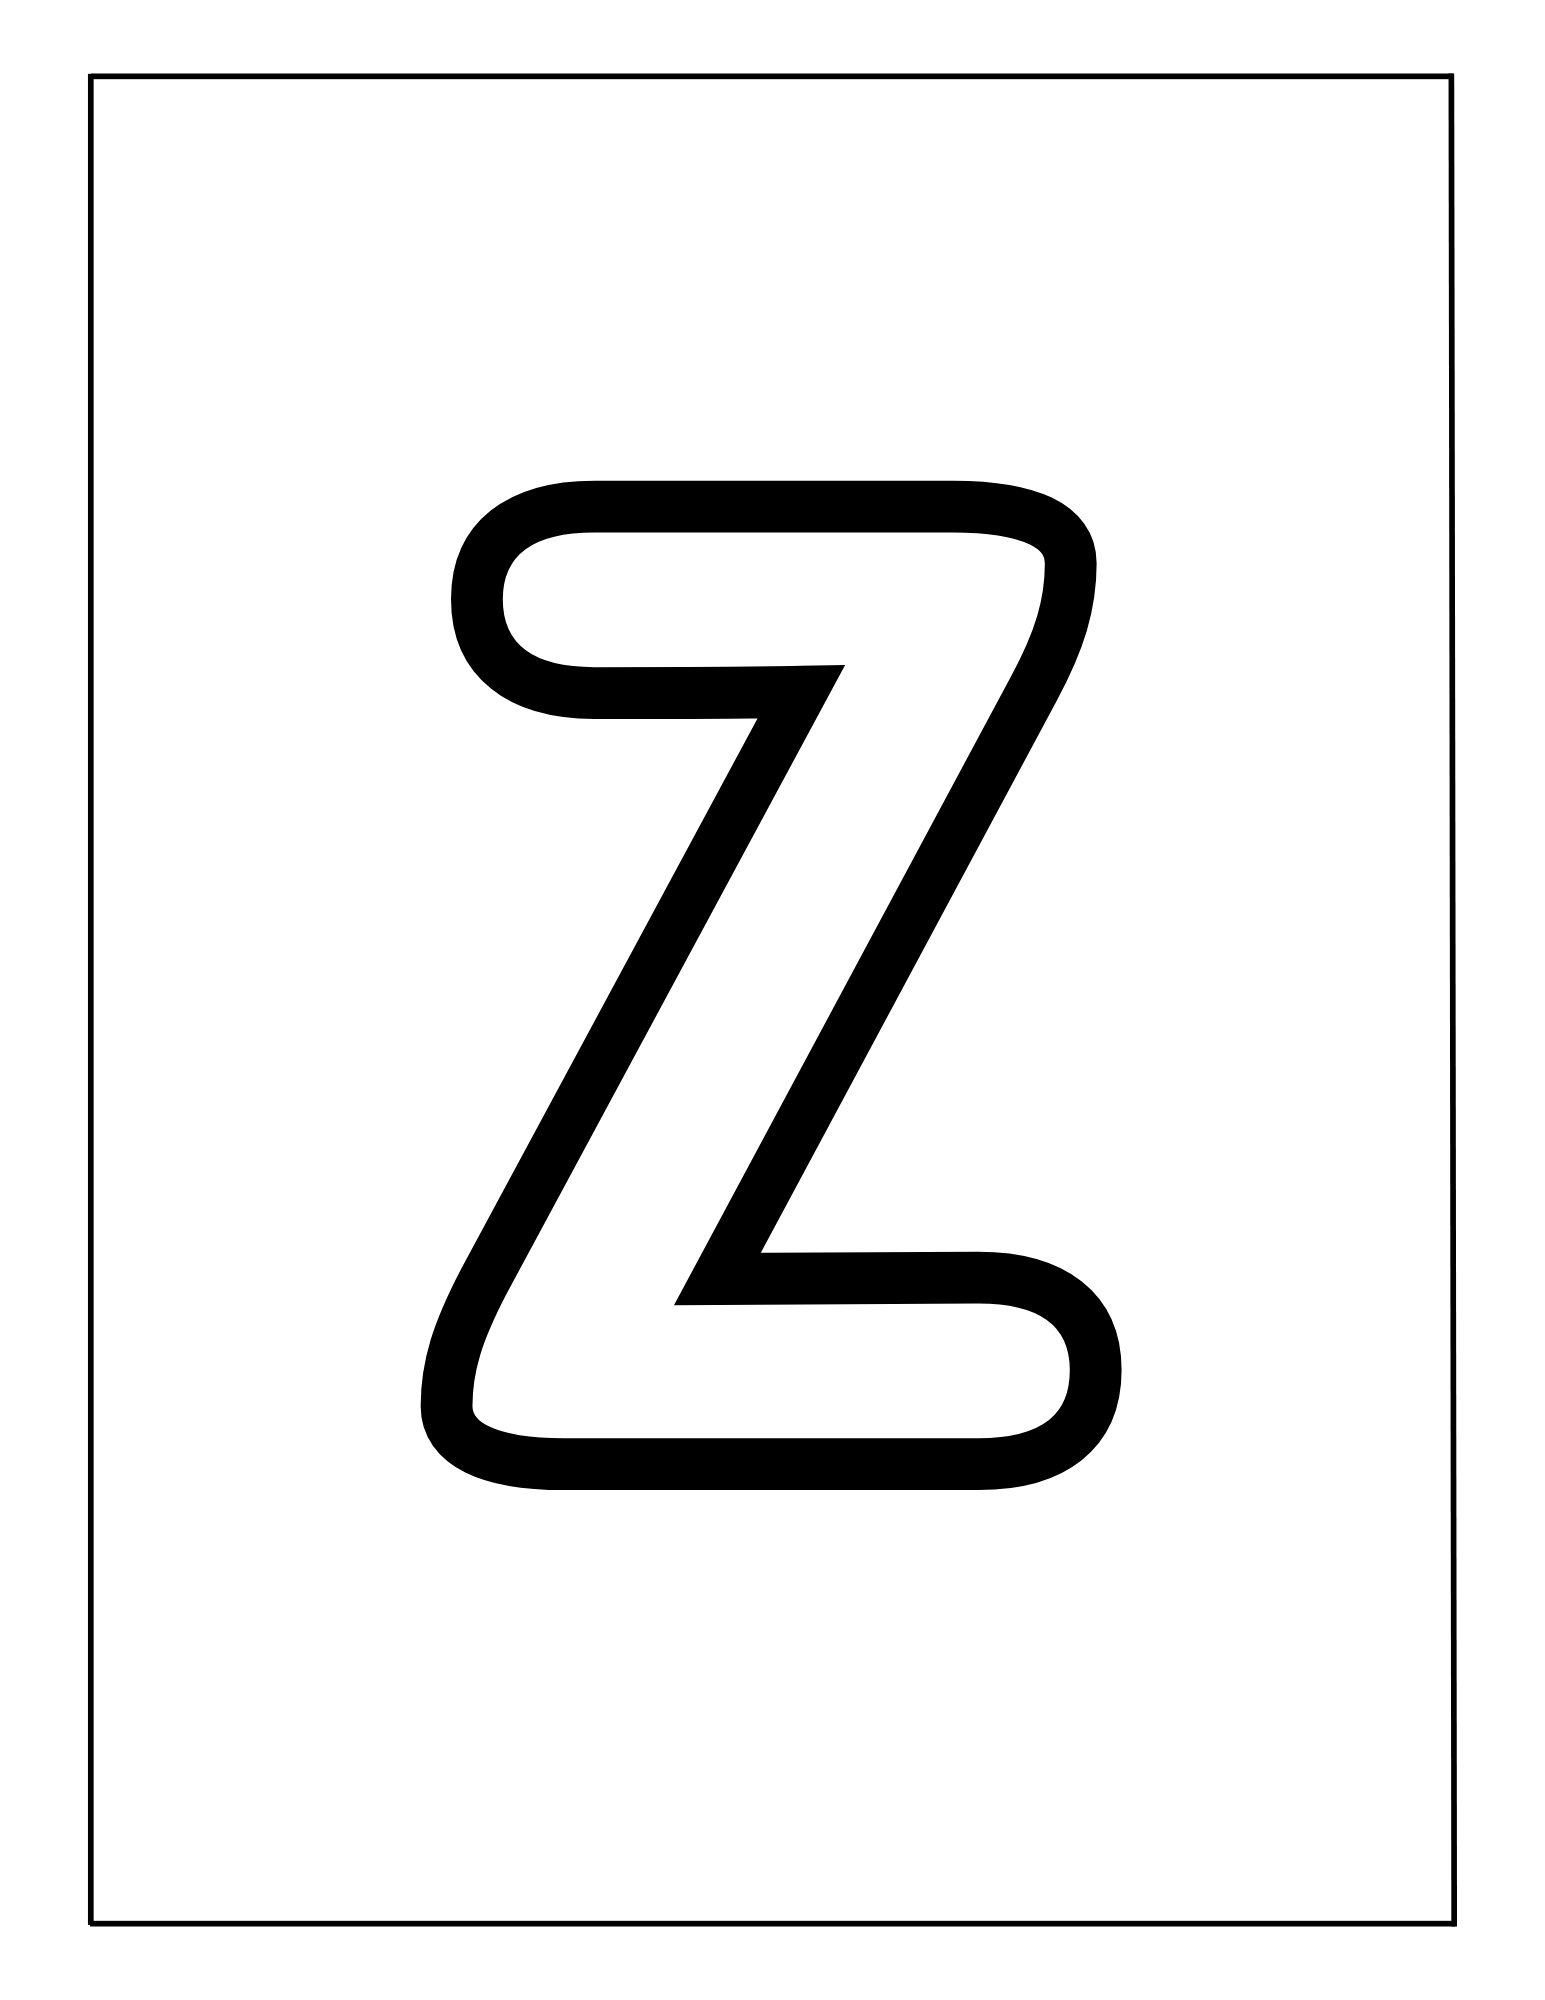 A+Z